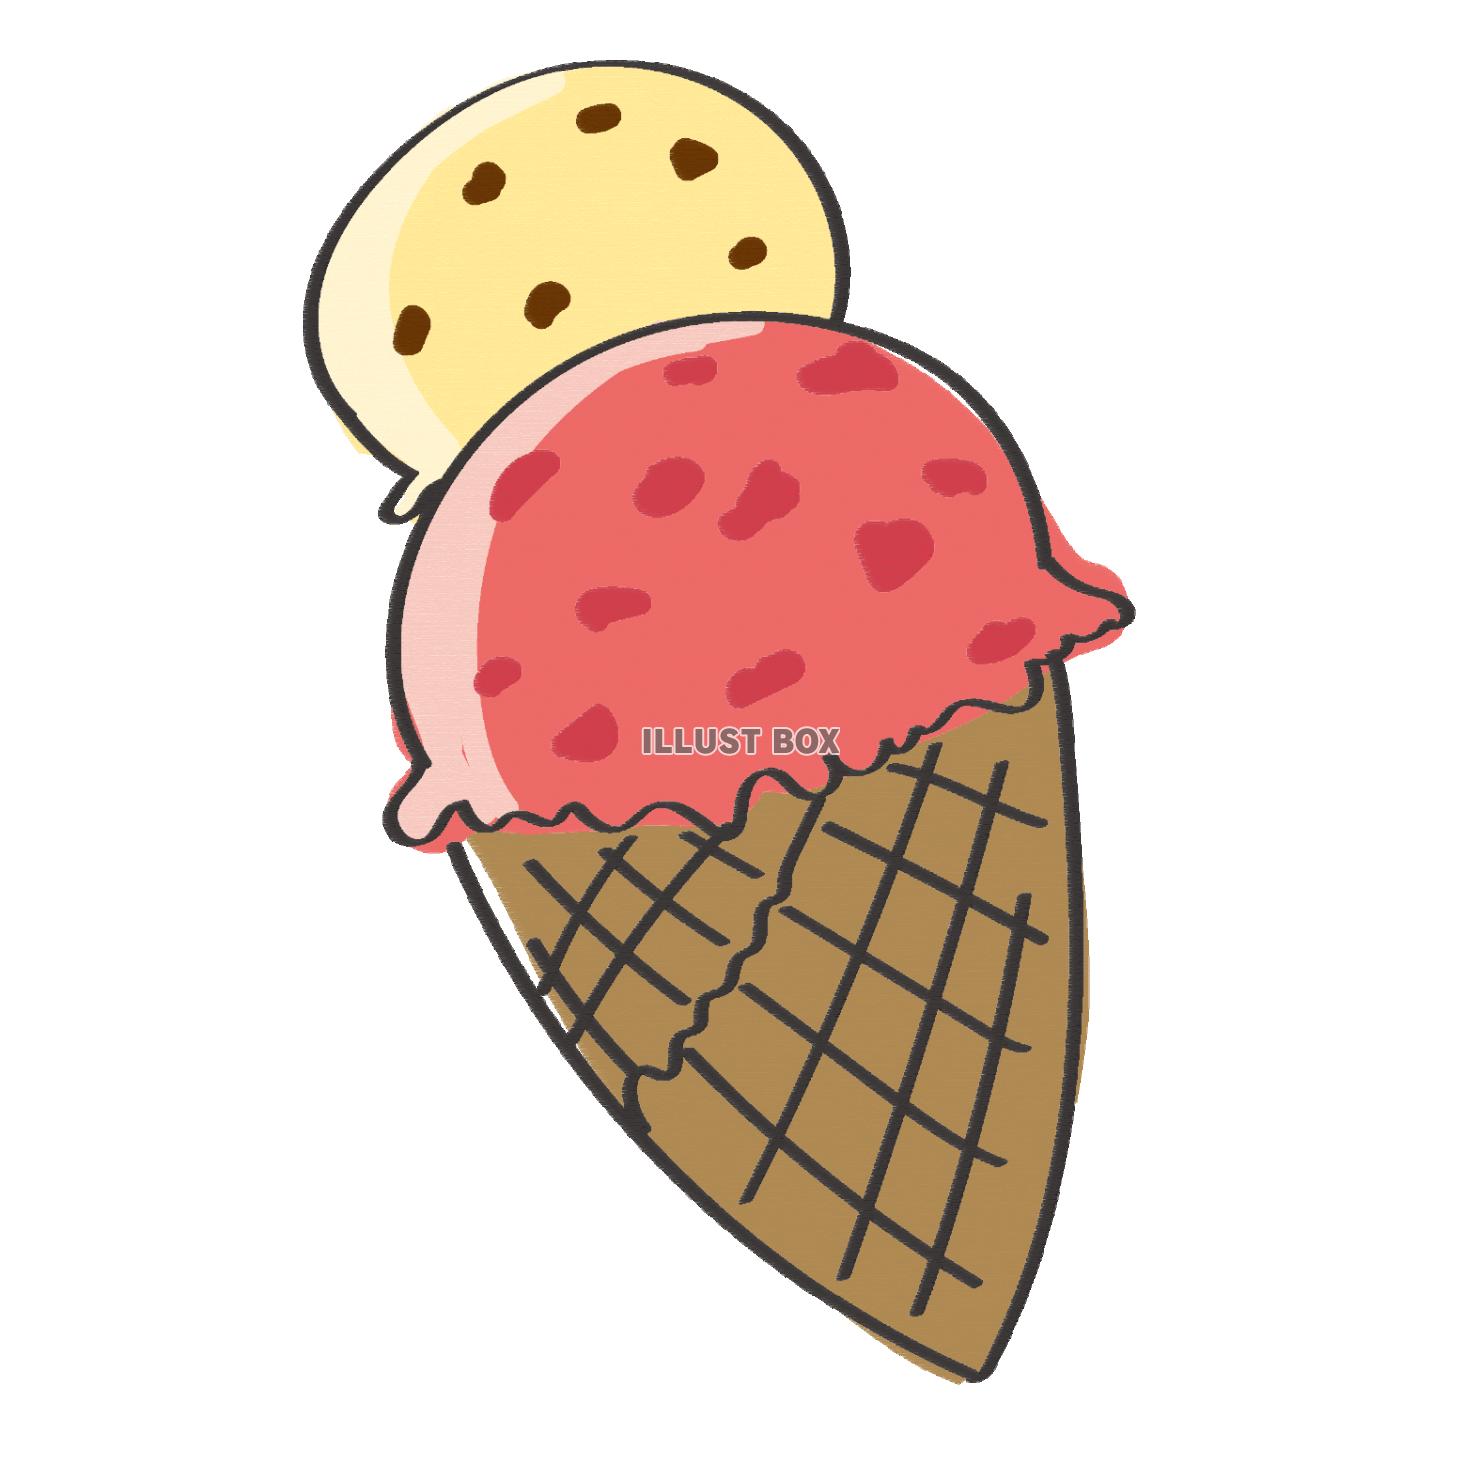 アイスクリーム01